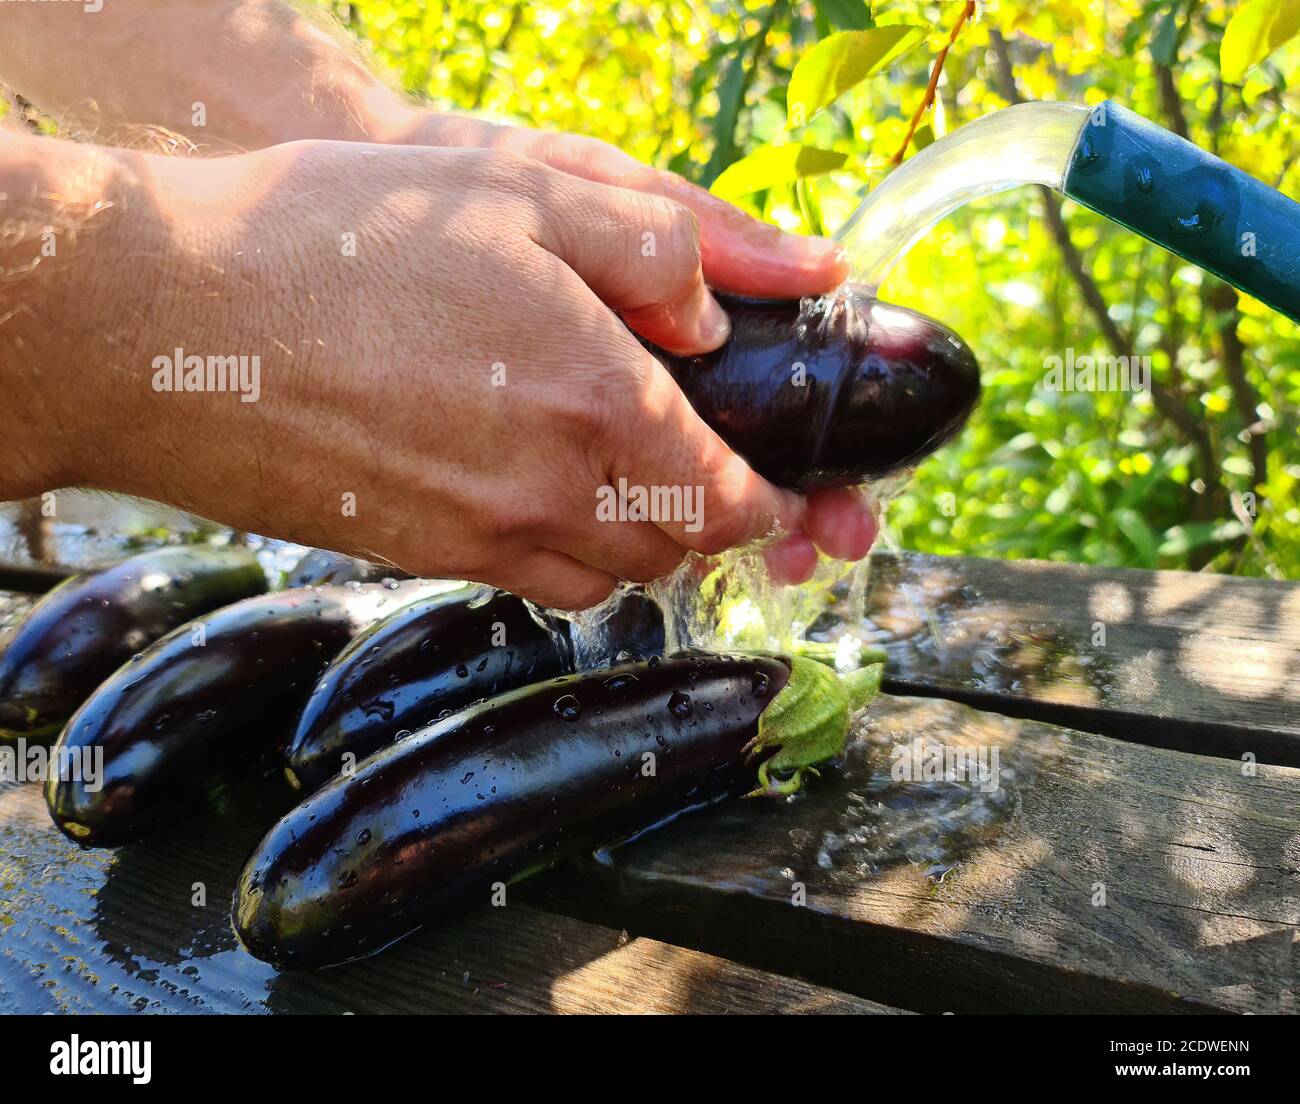 Un hombre lava una cosecha fresca de berenjenas bajo la presión del agua de una manguera en el país. Las verduras yacen en una tabla de madera húmeda Foto de stock